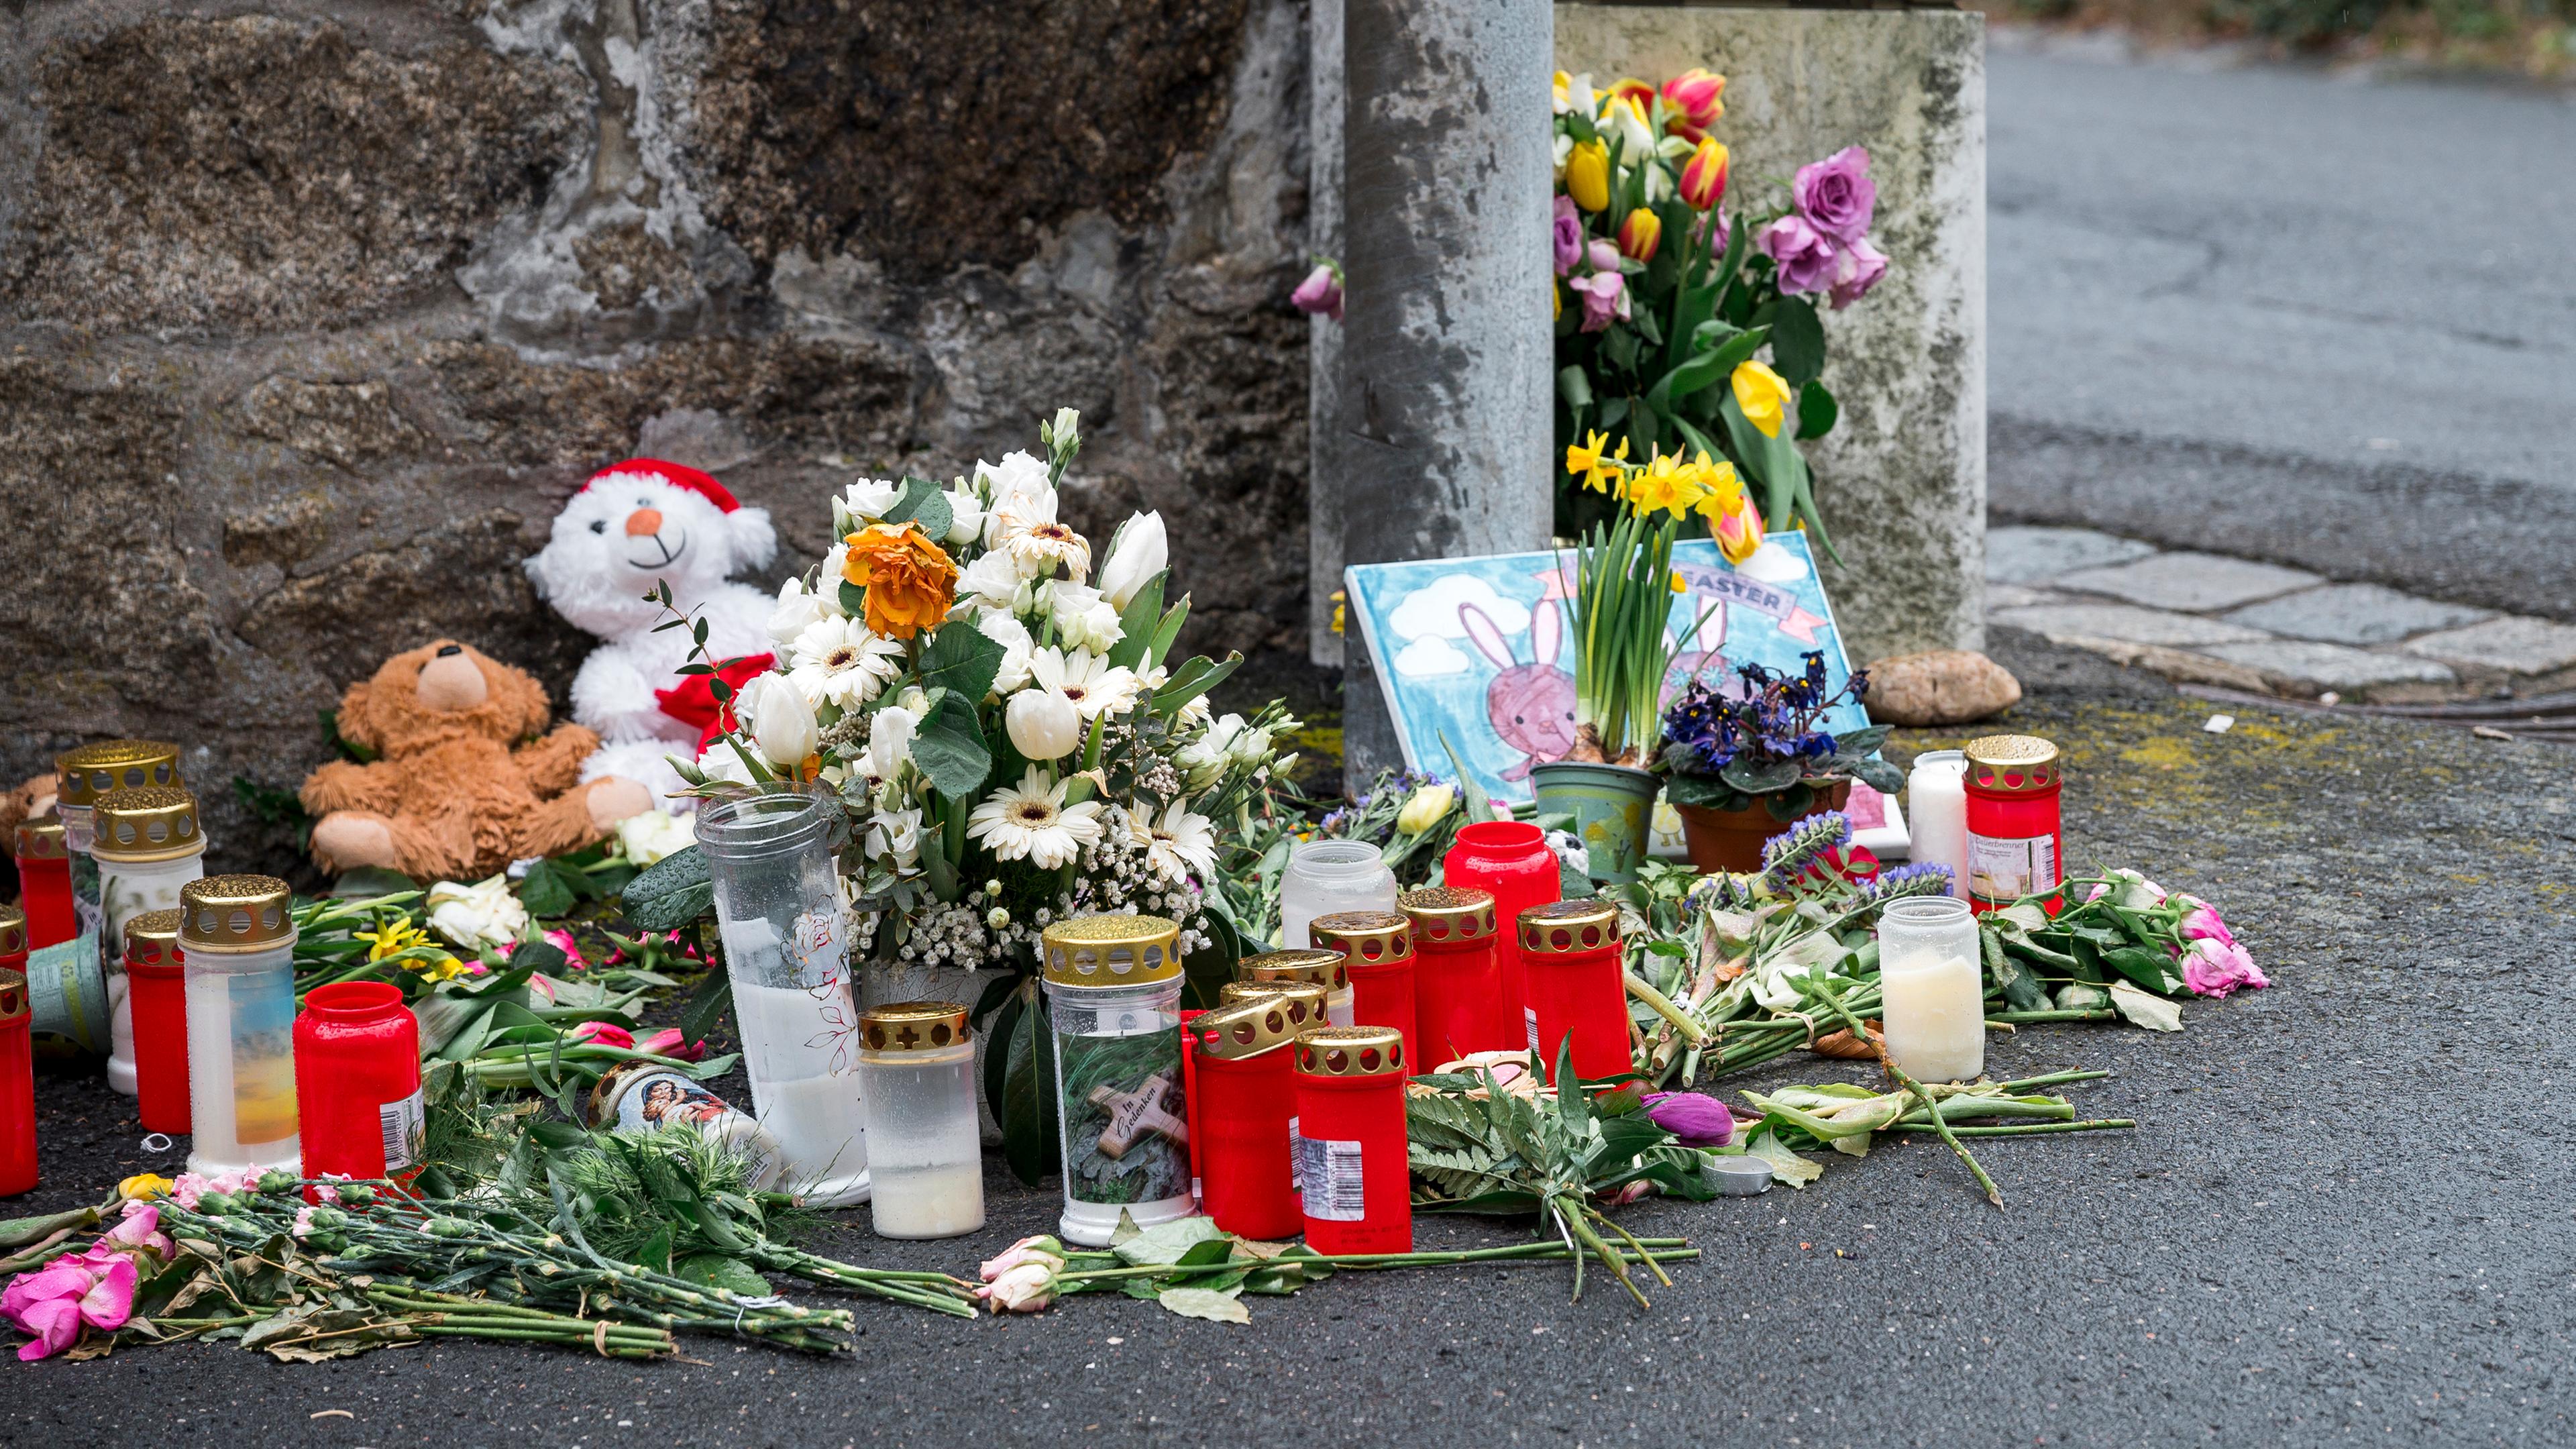  An einer Mauer vor dem Kinder- und Jugendhilfezentrum, in dem eine Zehnjährige tot aufgefunden wurde, liegen Blumen, Kuscheltiere und Kerzen.